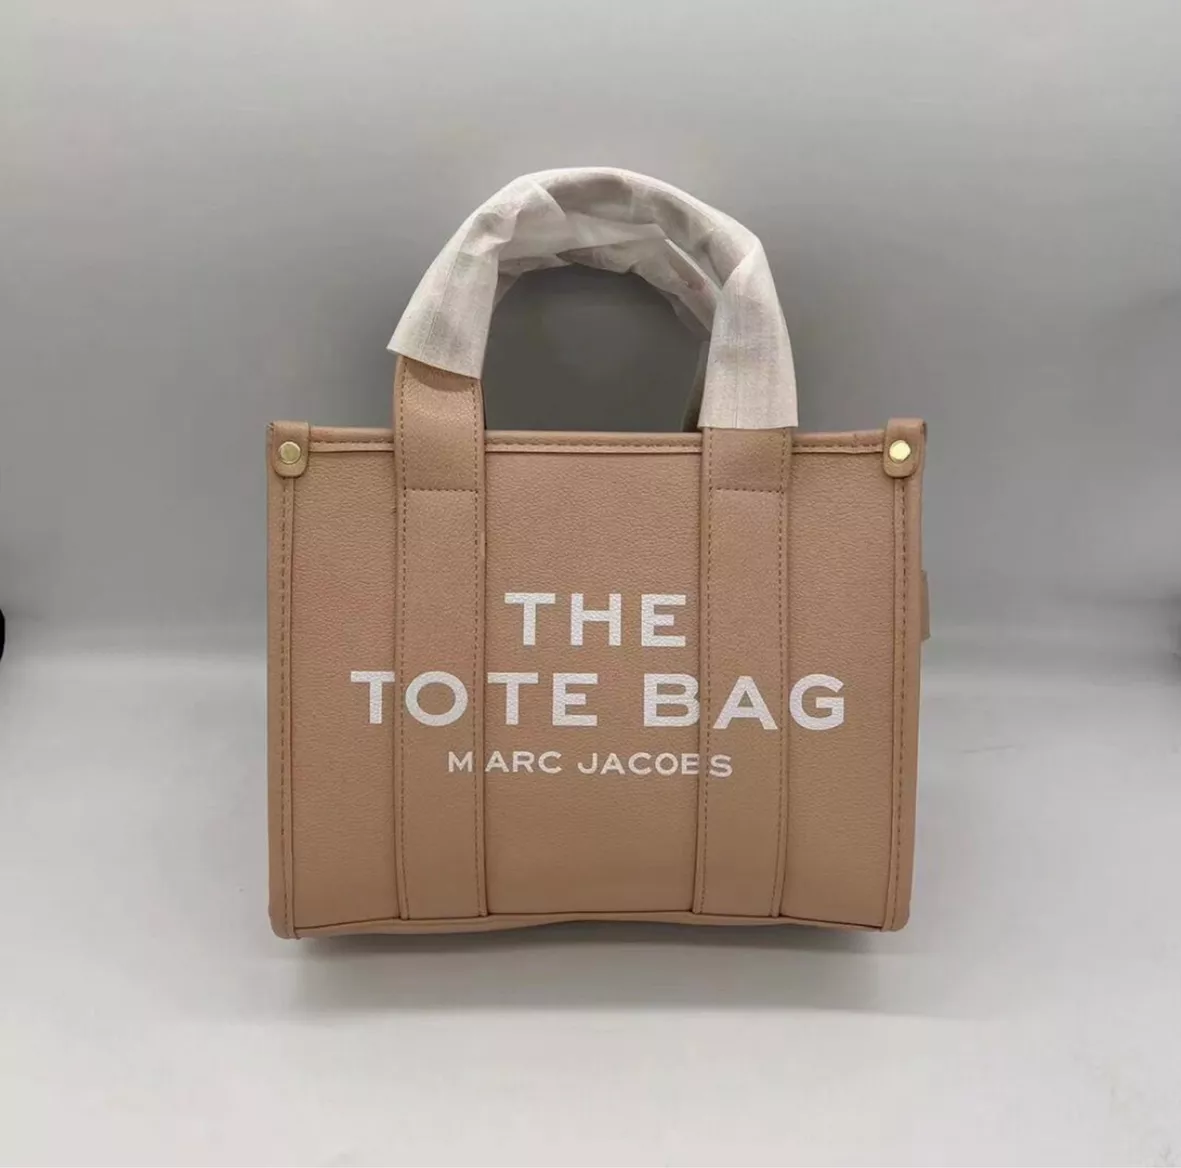 Brand designer women bag shoulder … curated on LTK